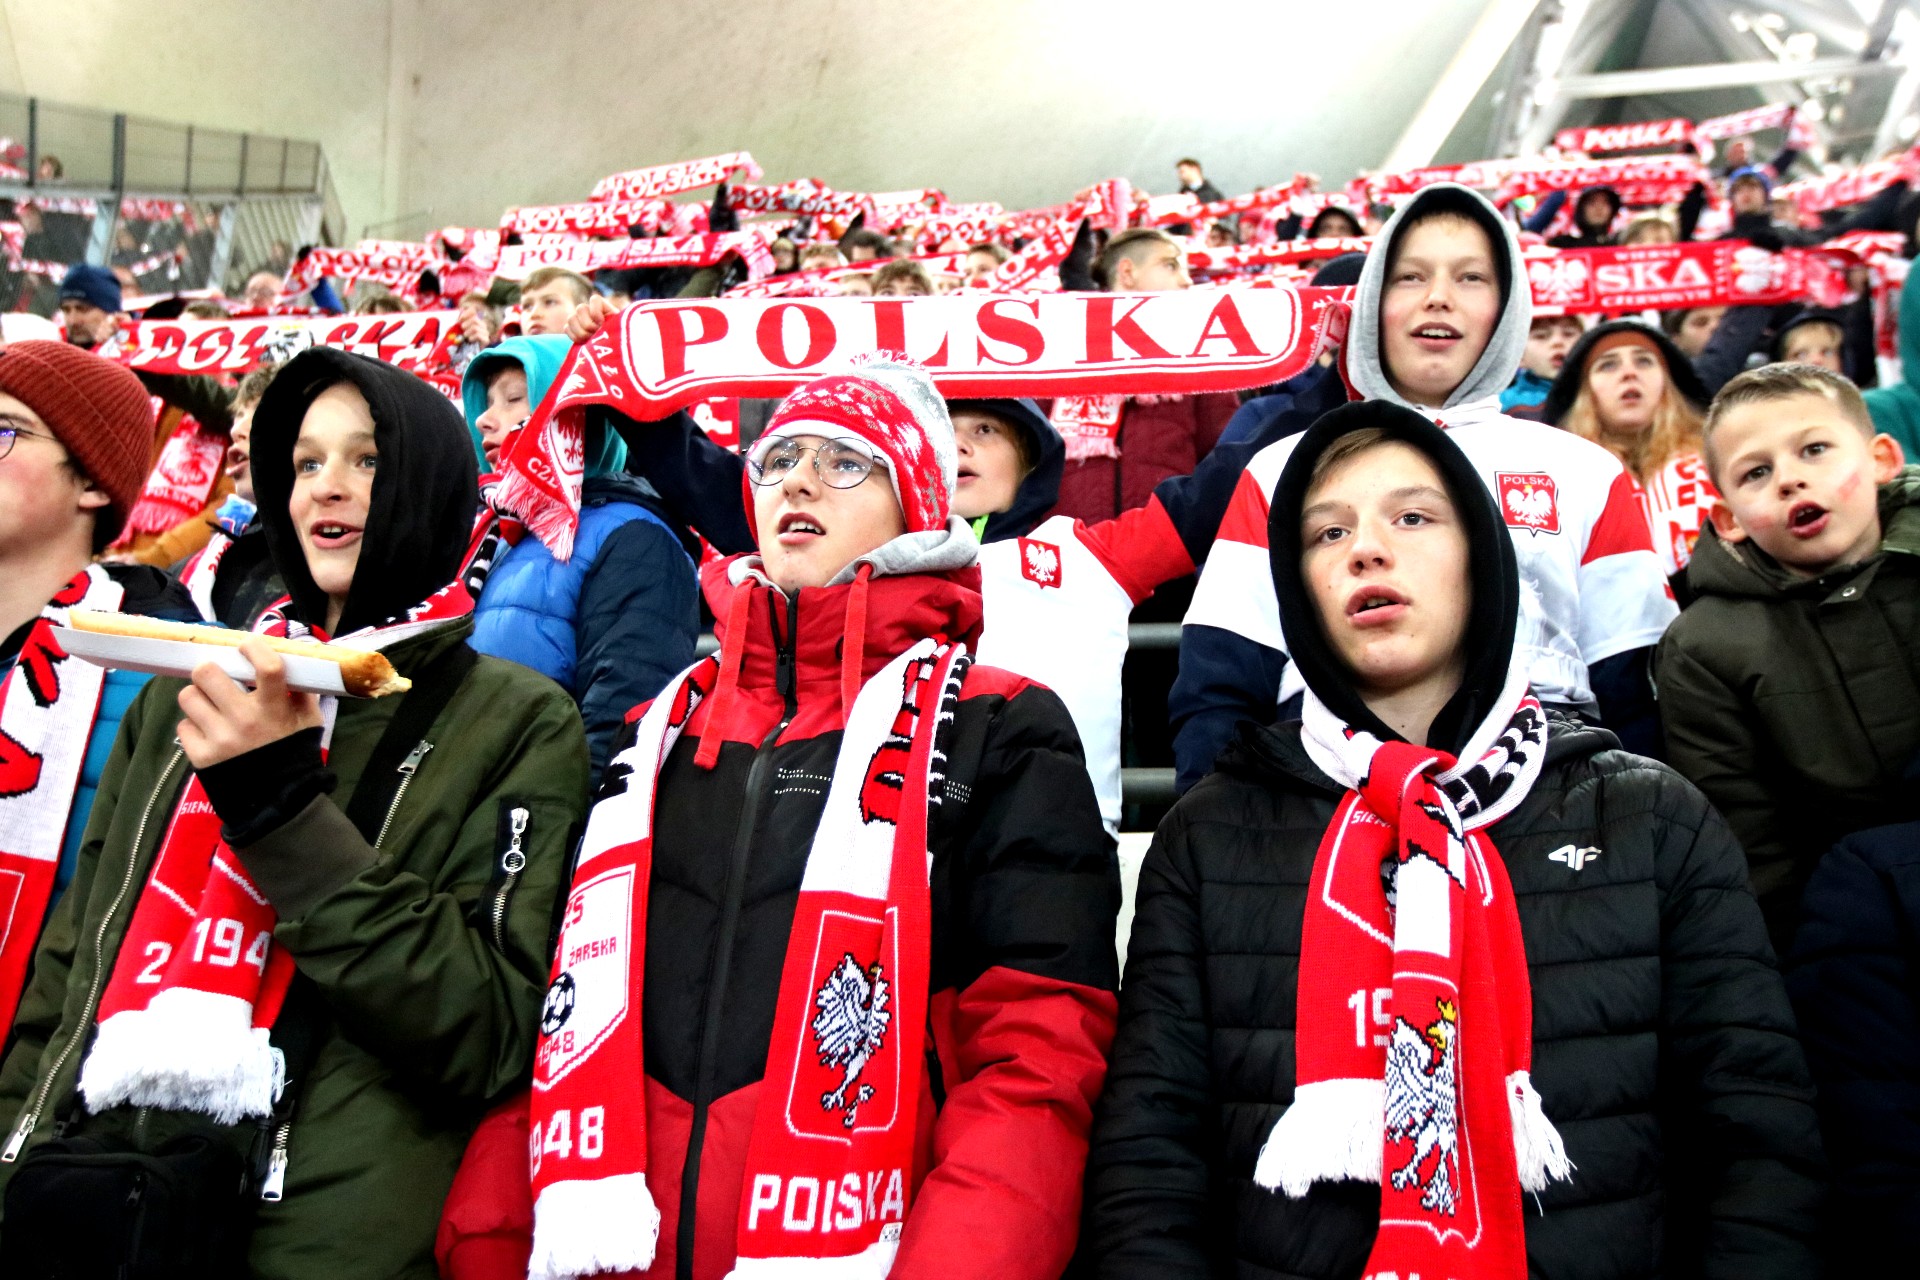 Trybuna stadionu wypełniona dziećmi w biało-czerwonych czapkach i szalikach, trzymają szaliki z napisem Polska.